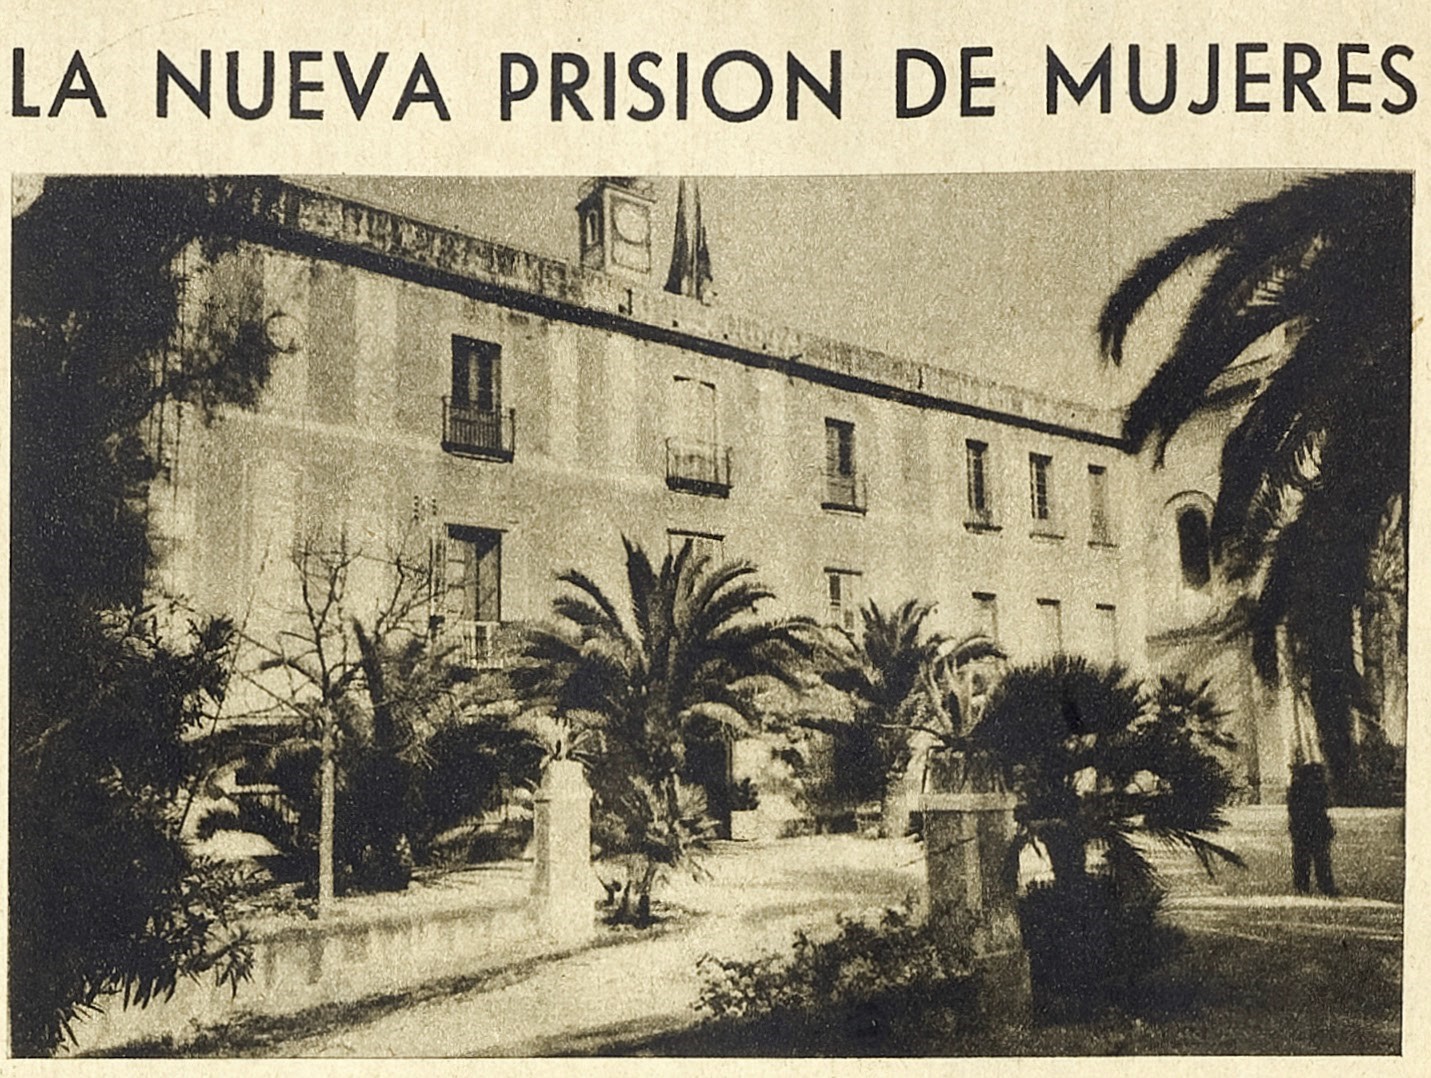 AHCB-AF. Pérez de Rozas, Carlos. 006202. Demolition works of Presó Vella in Barcelona. October 29th, 1936.